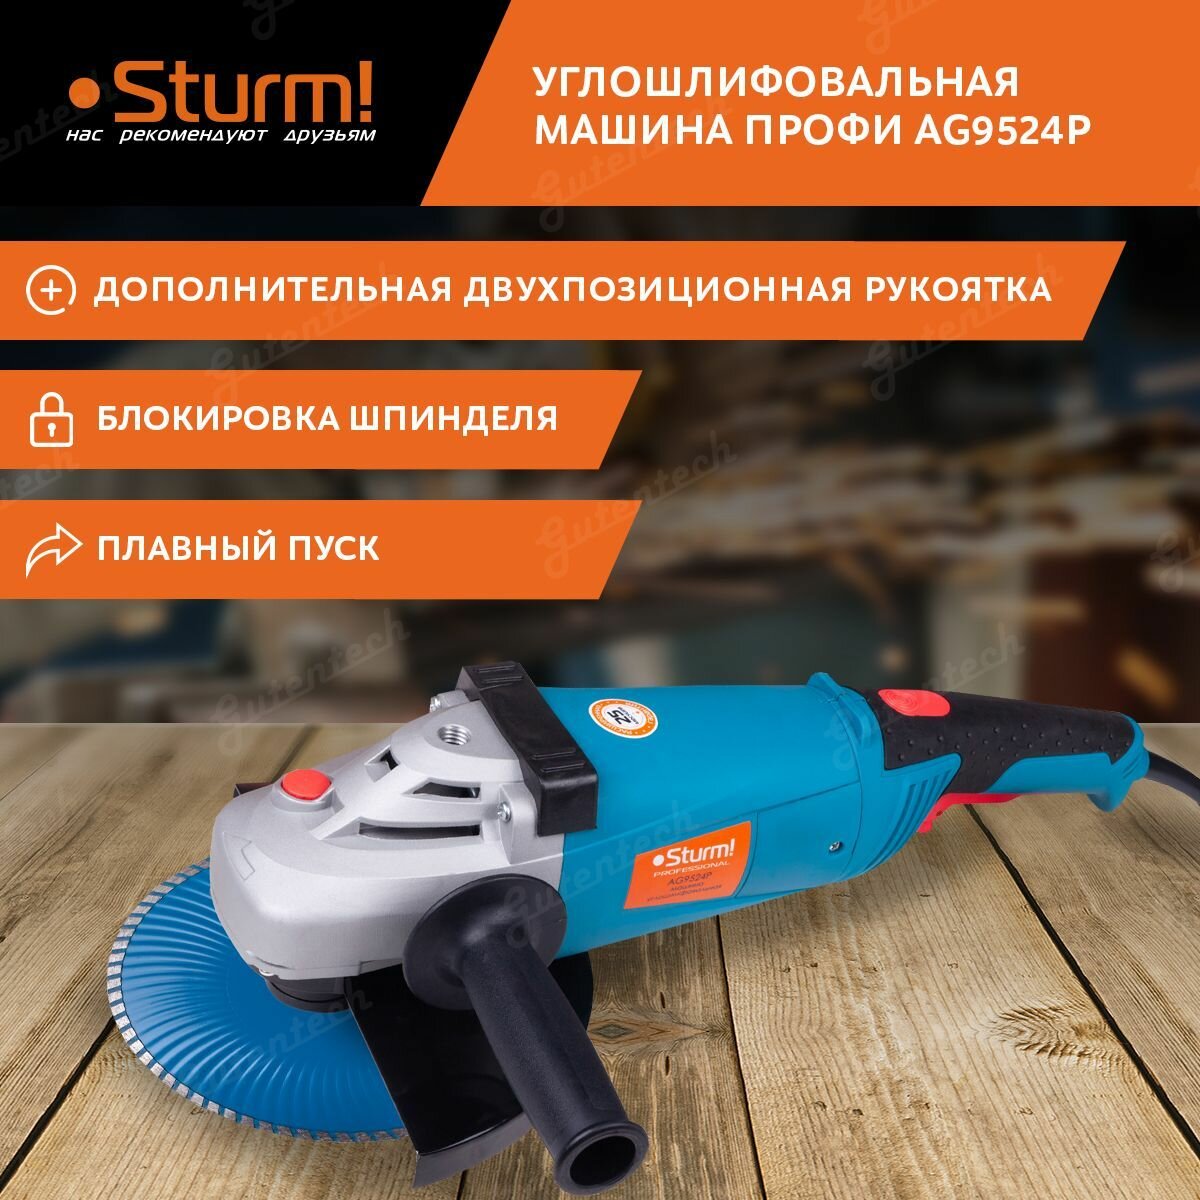 УШМ Sturm! AG9524P, 2600 Вт, 230 мм, без аккумулятора